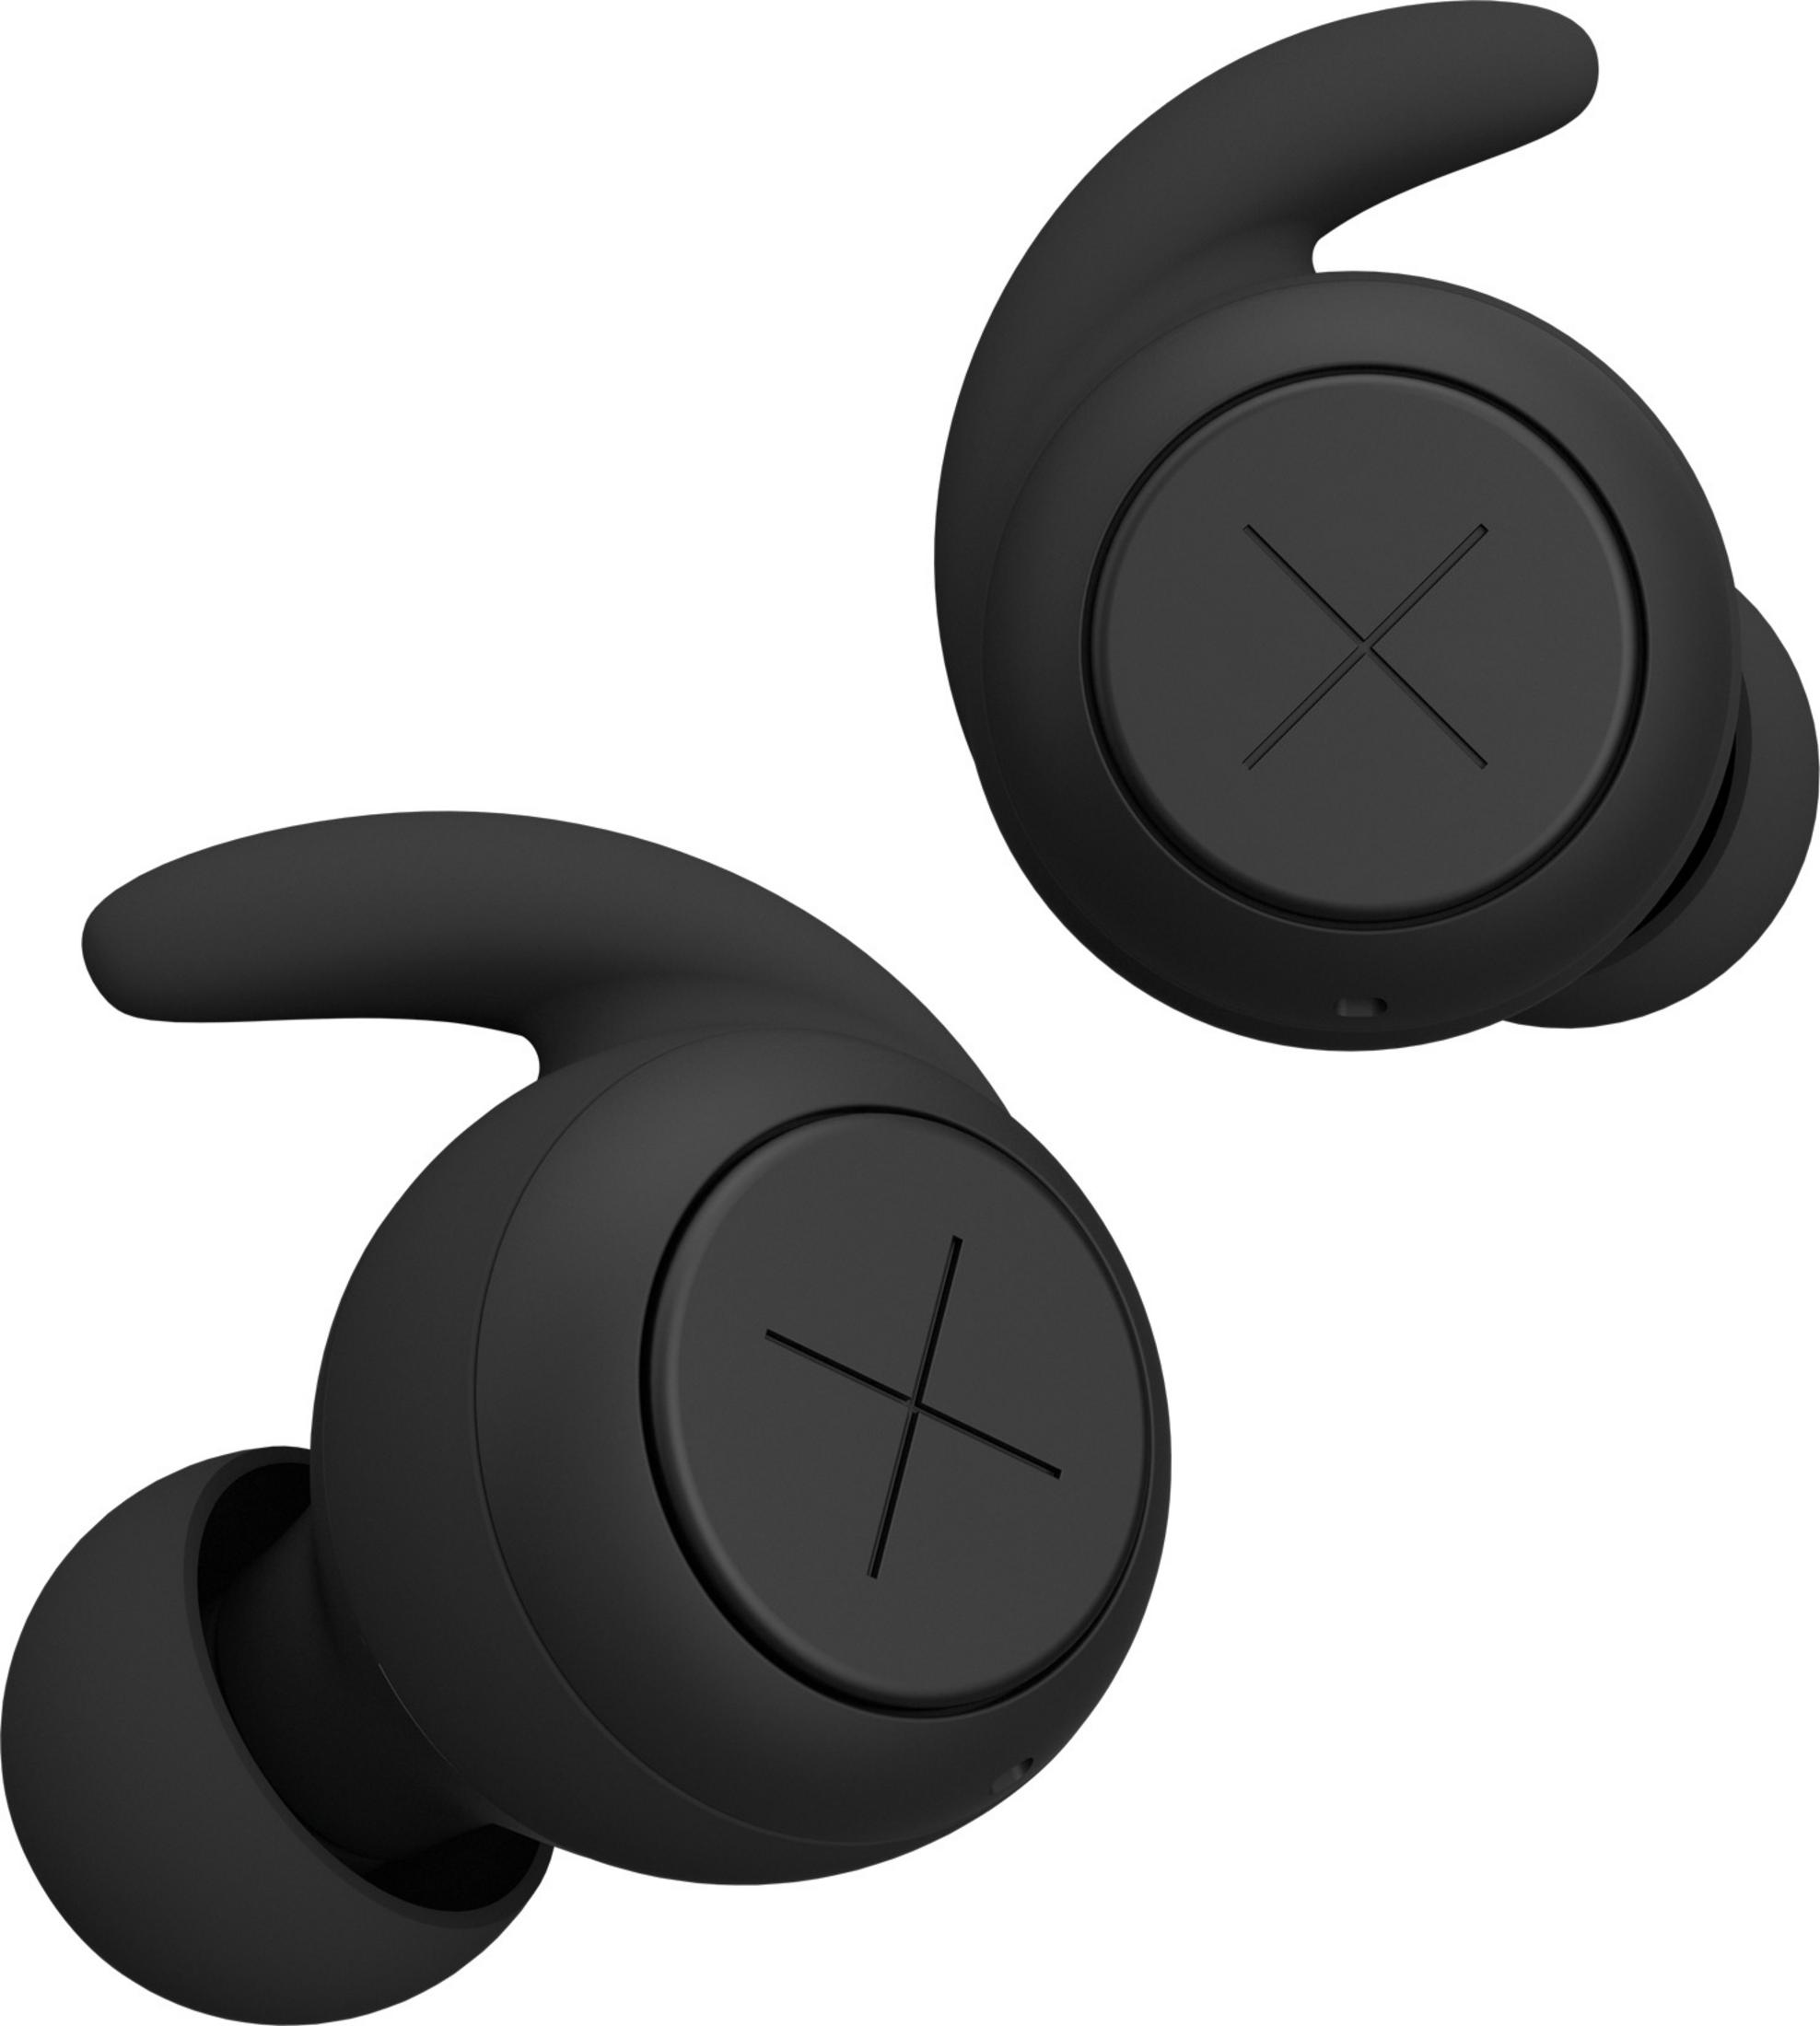 KYGO E7/1000 TRUE Schwarz In-ear WIRELESS Bluetooth Kopfhörer BLACK,